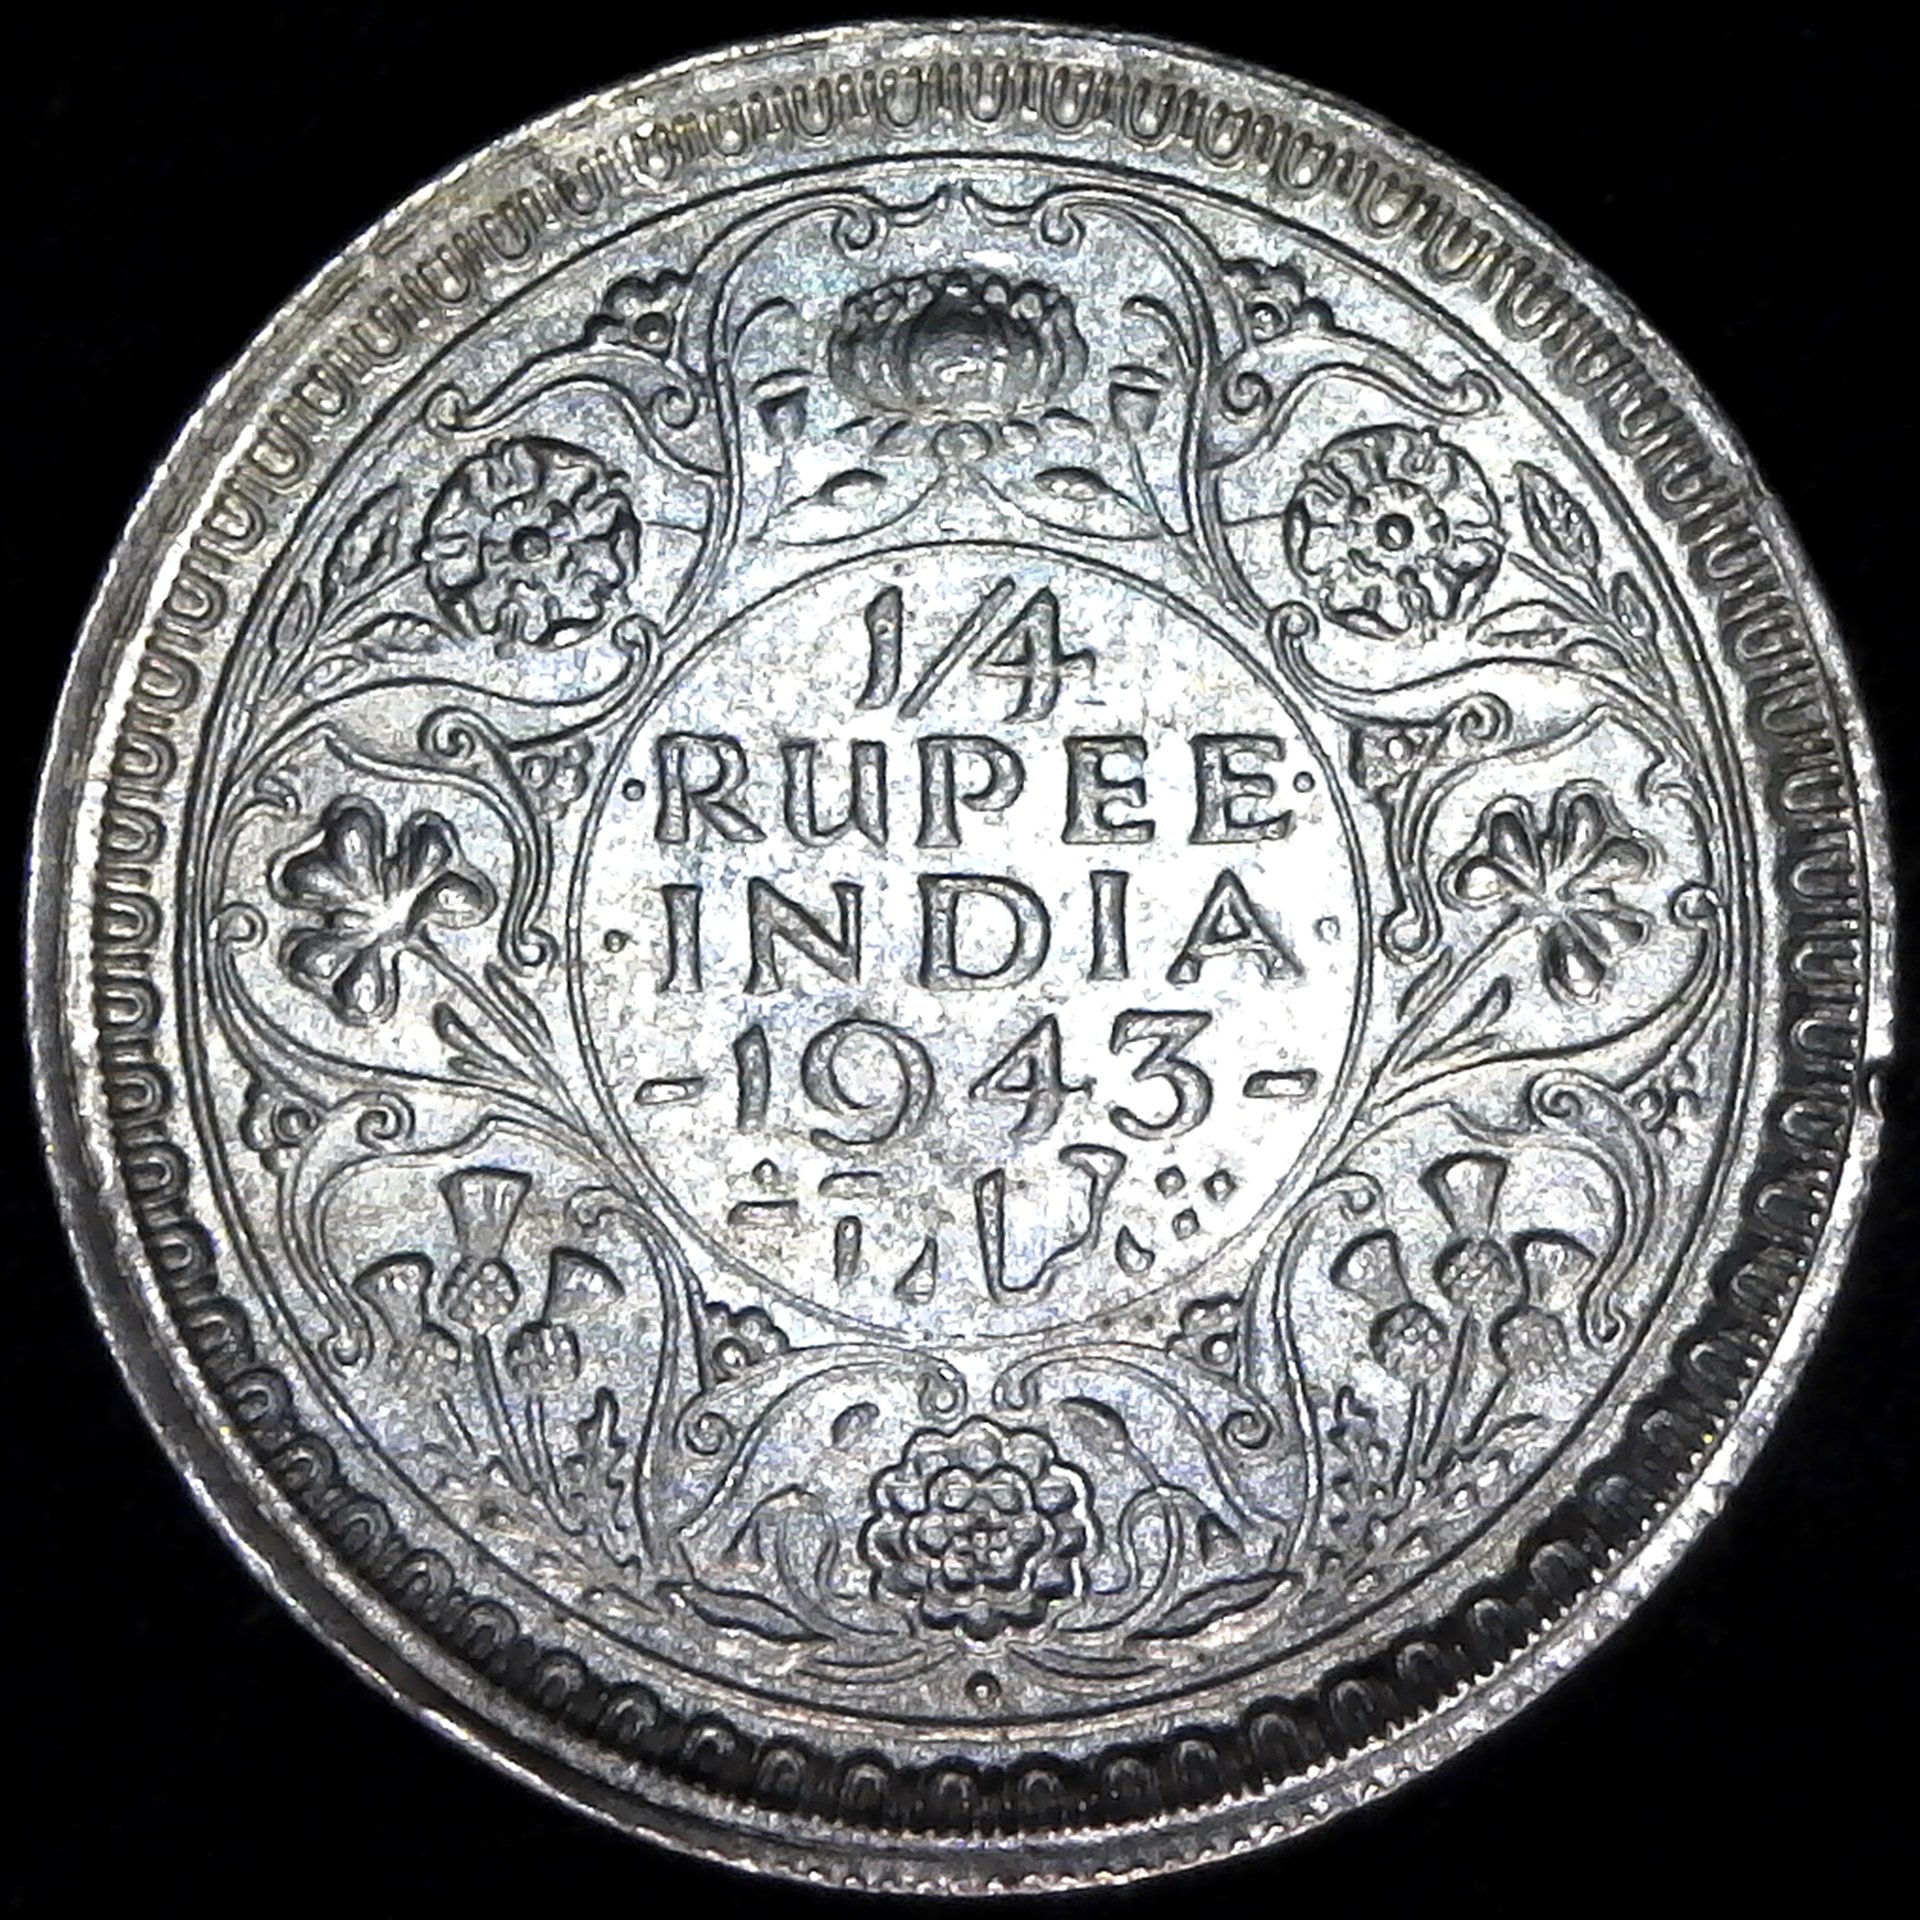 India Qtr Rupee B 1943 rev.jpg